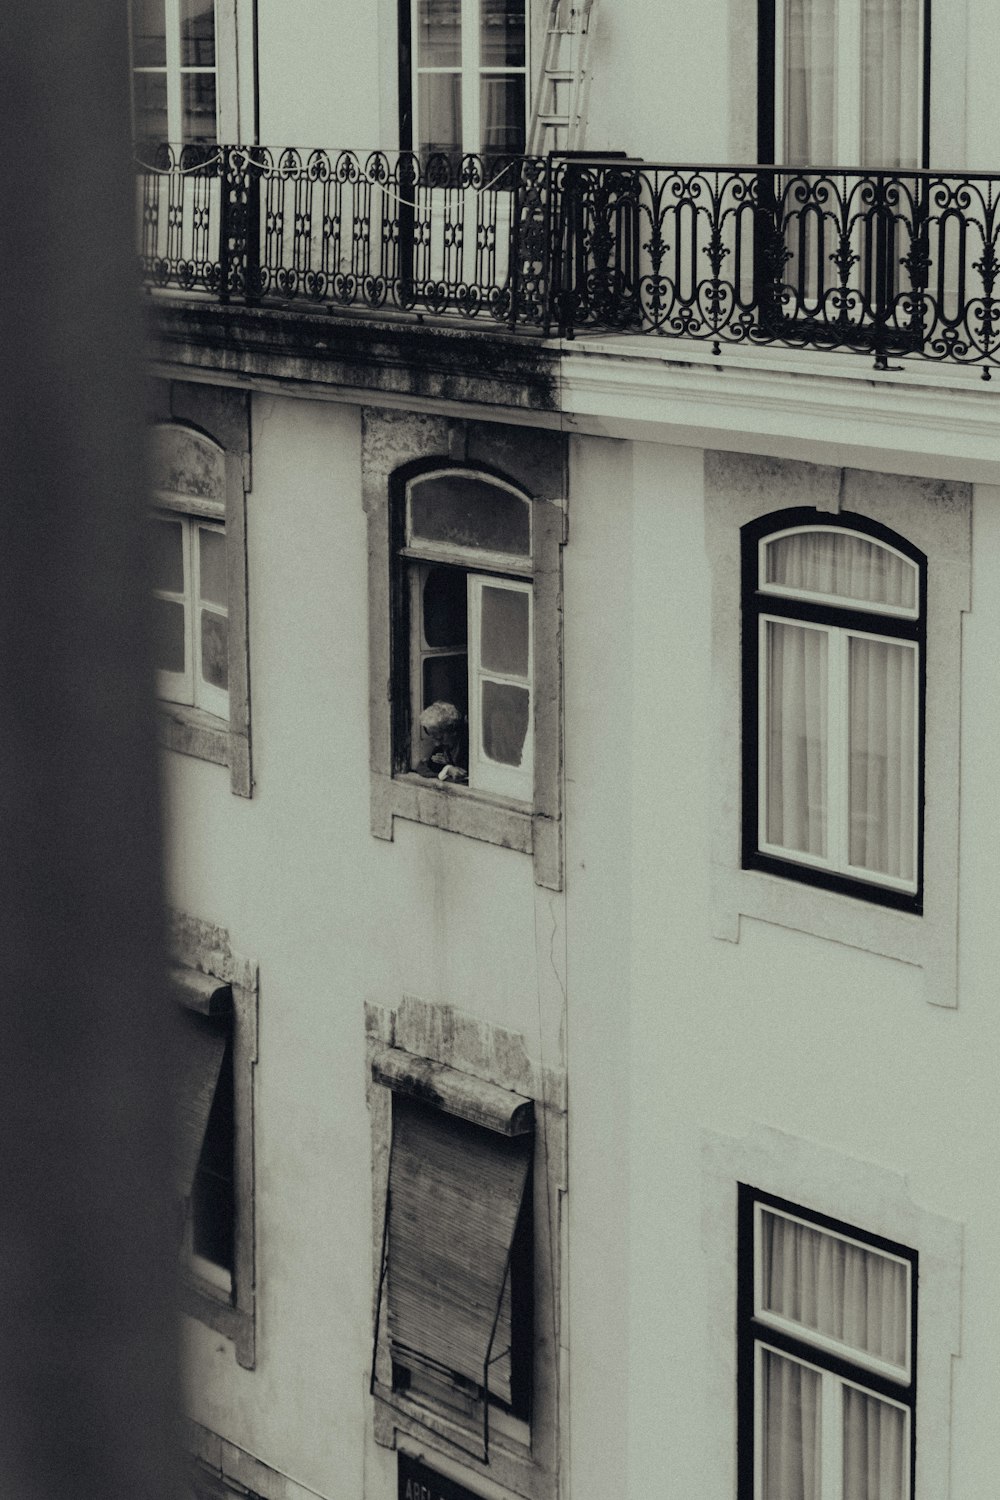 une photo en noir et blanc d’un immeuble avec balcon